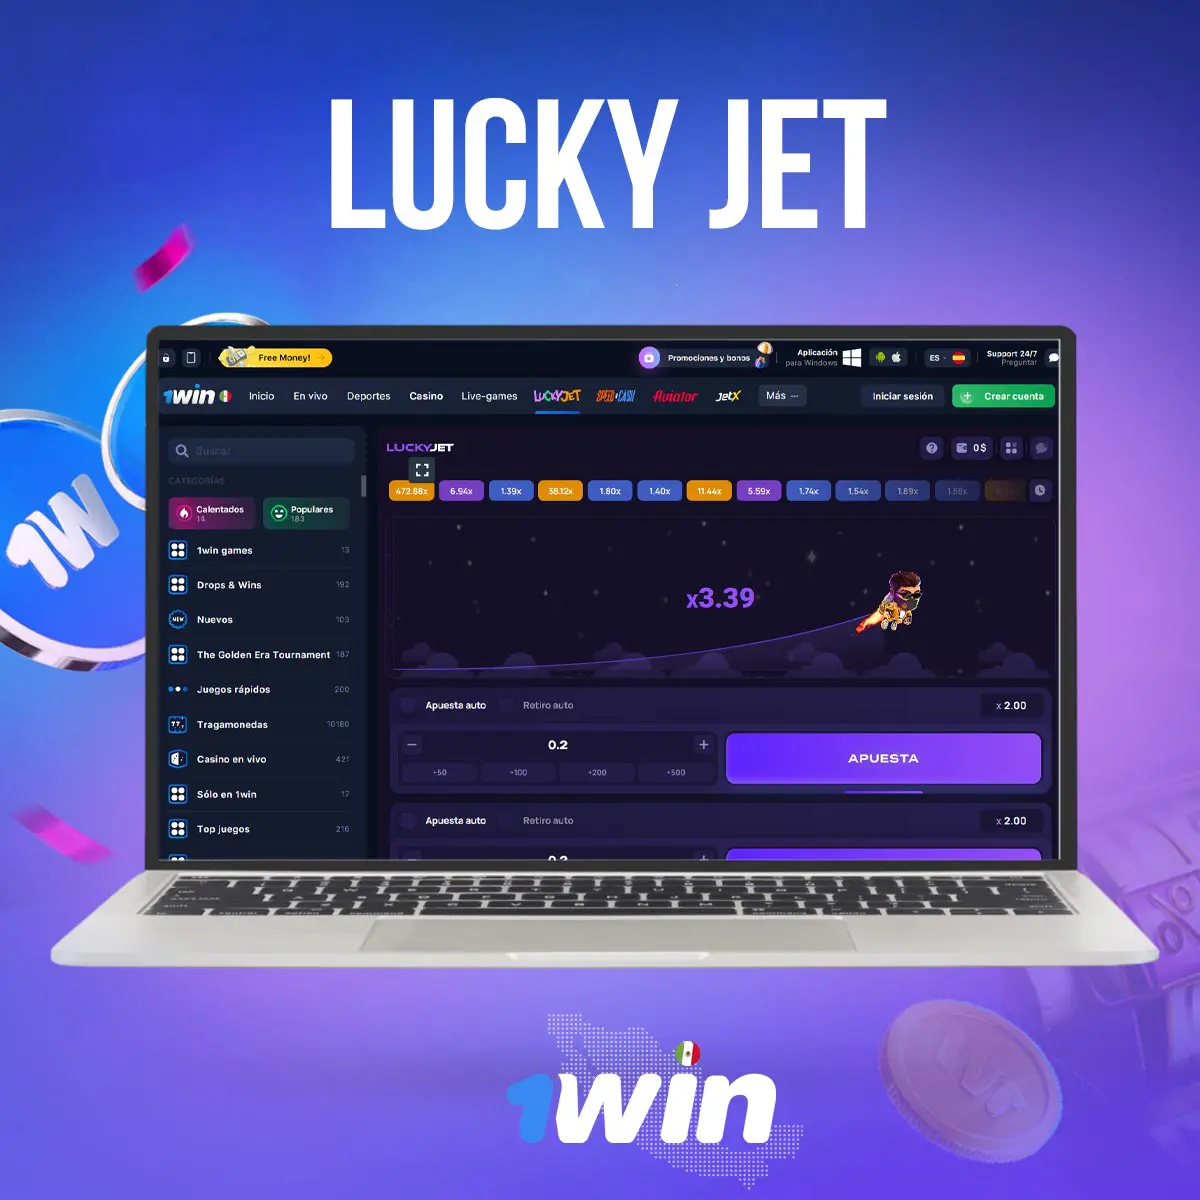 Cómo jugar a Lucky Jet en app 1win